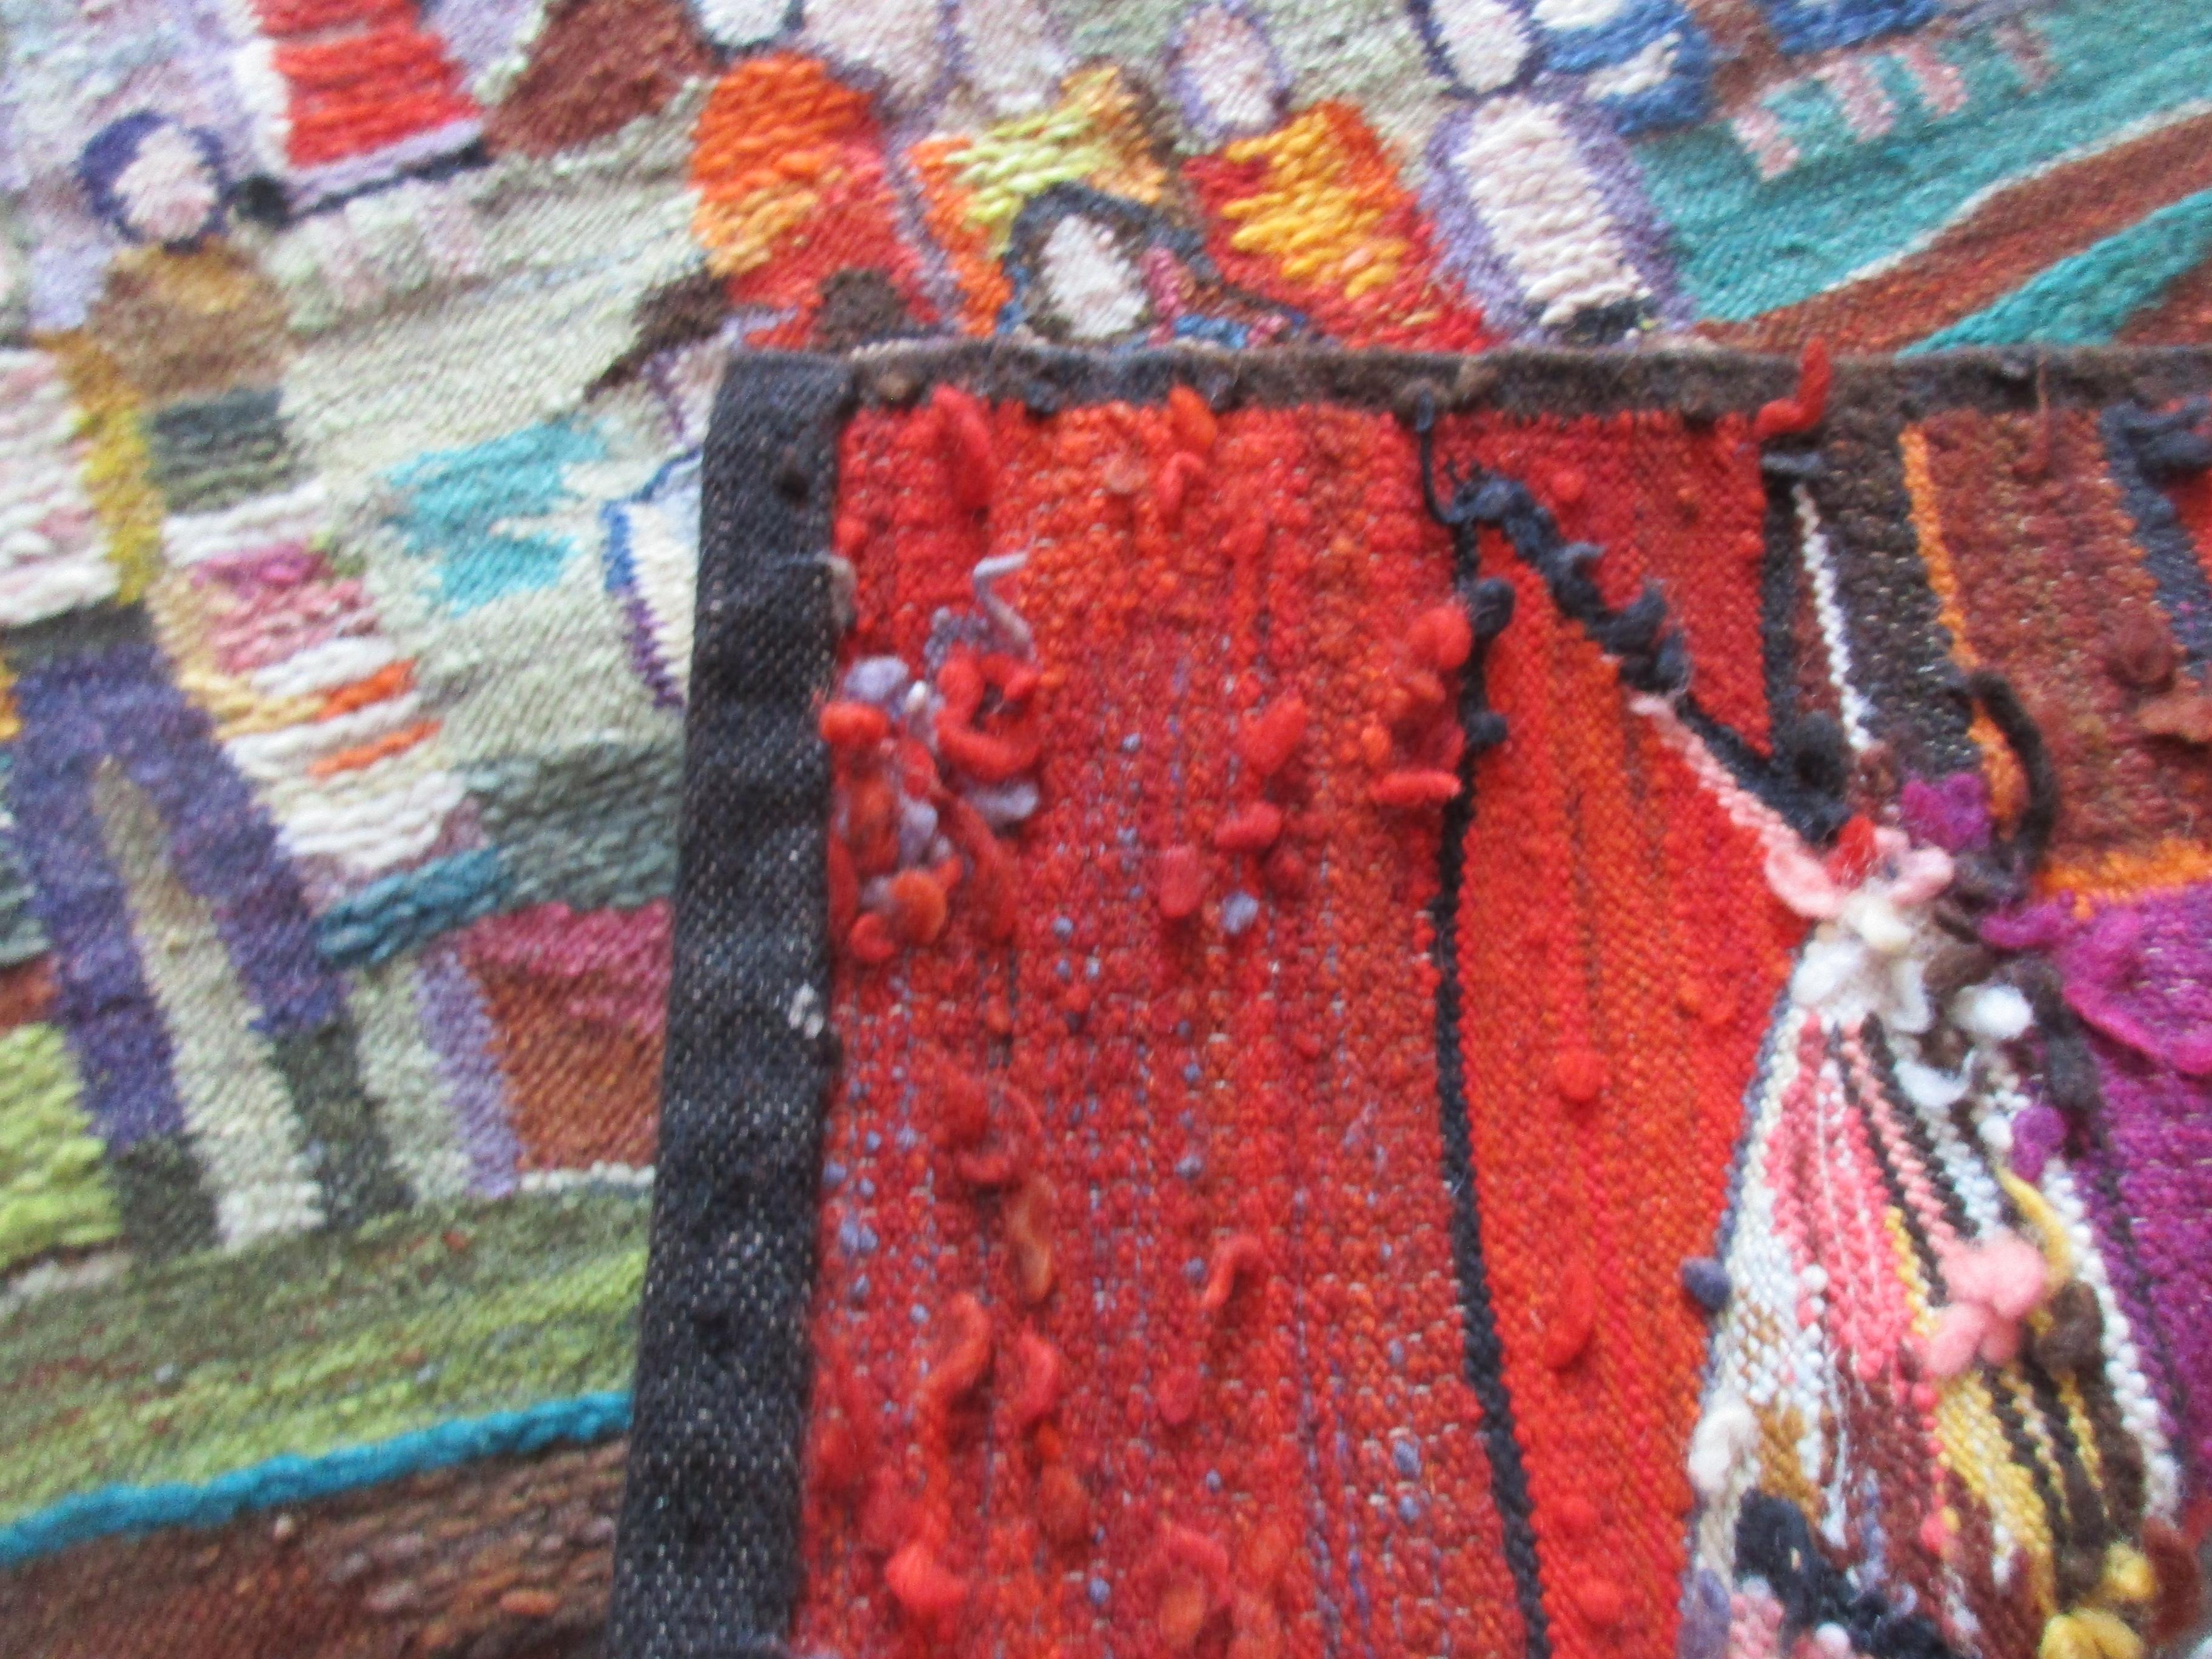 Tapisserie vintage en laine tissée à la main conçue par l'artiste polonais Piotr Grabowski 
et tissé à la main par Szczakiel Elfryda et distribué dans les années 1980 par Cepelia. Cepelia était une fondation polonaise pour l'art et l'artisanat créée